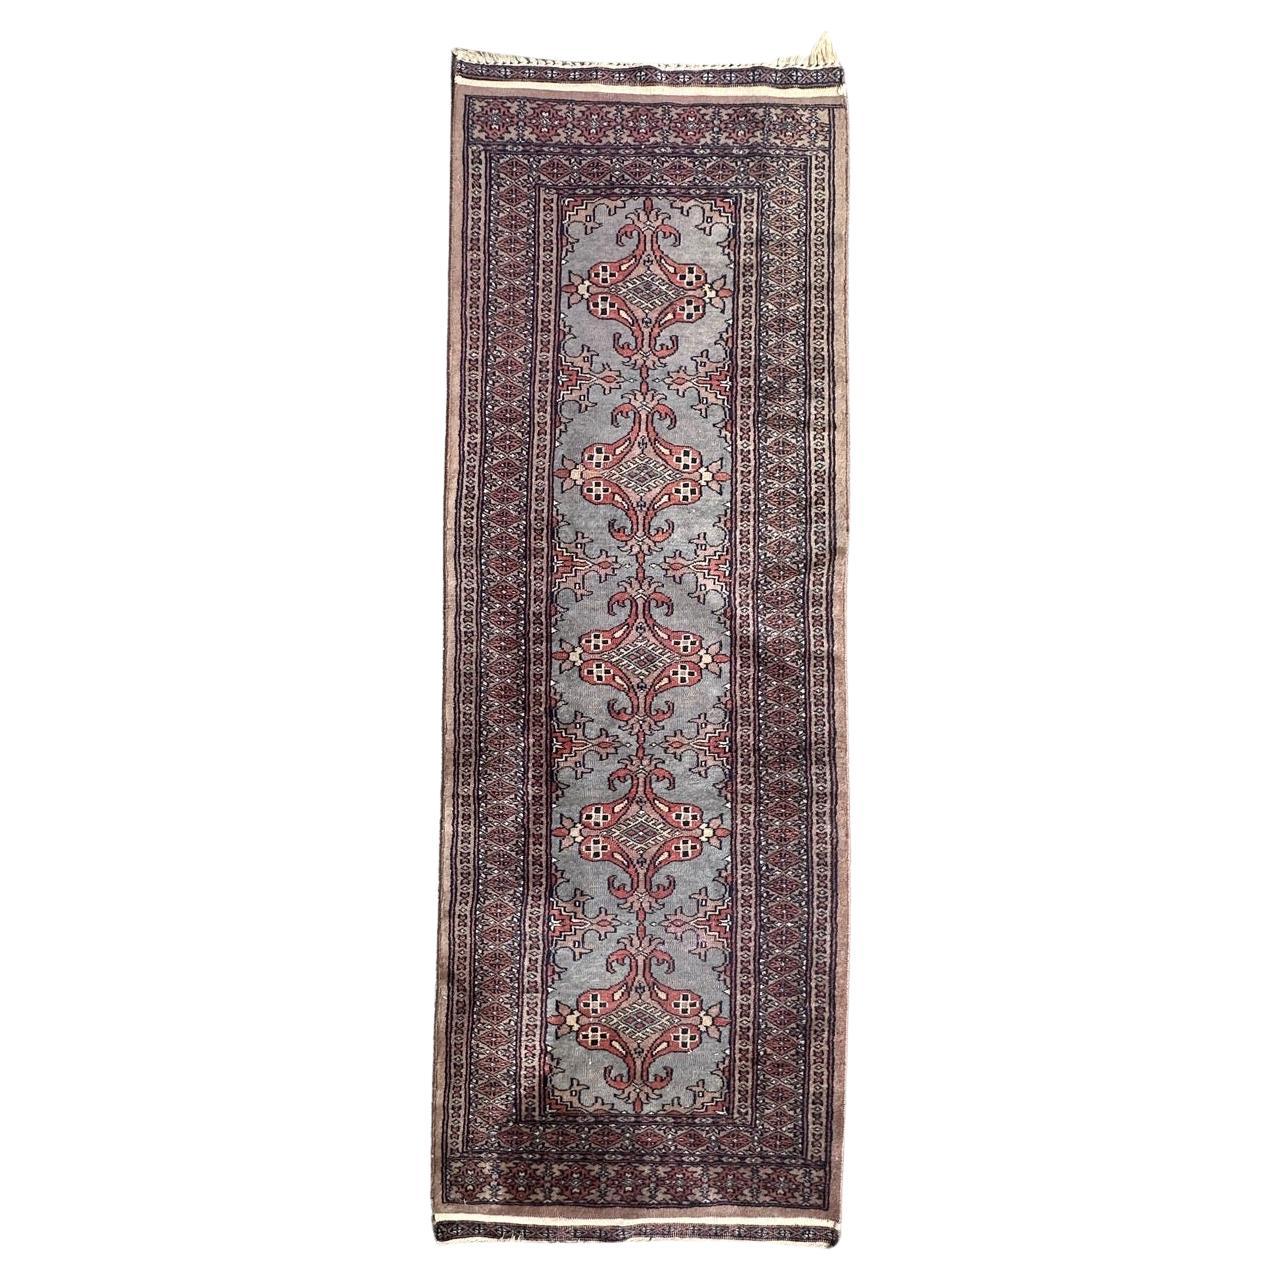 Pretty vintage Pakistani rug